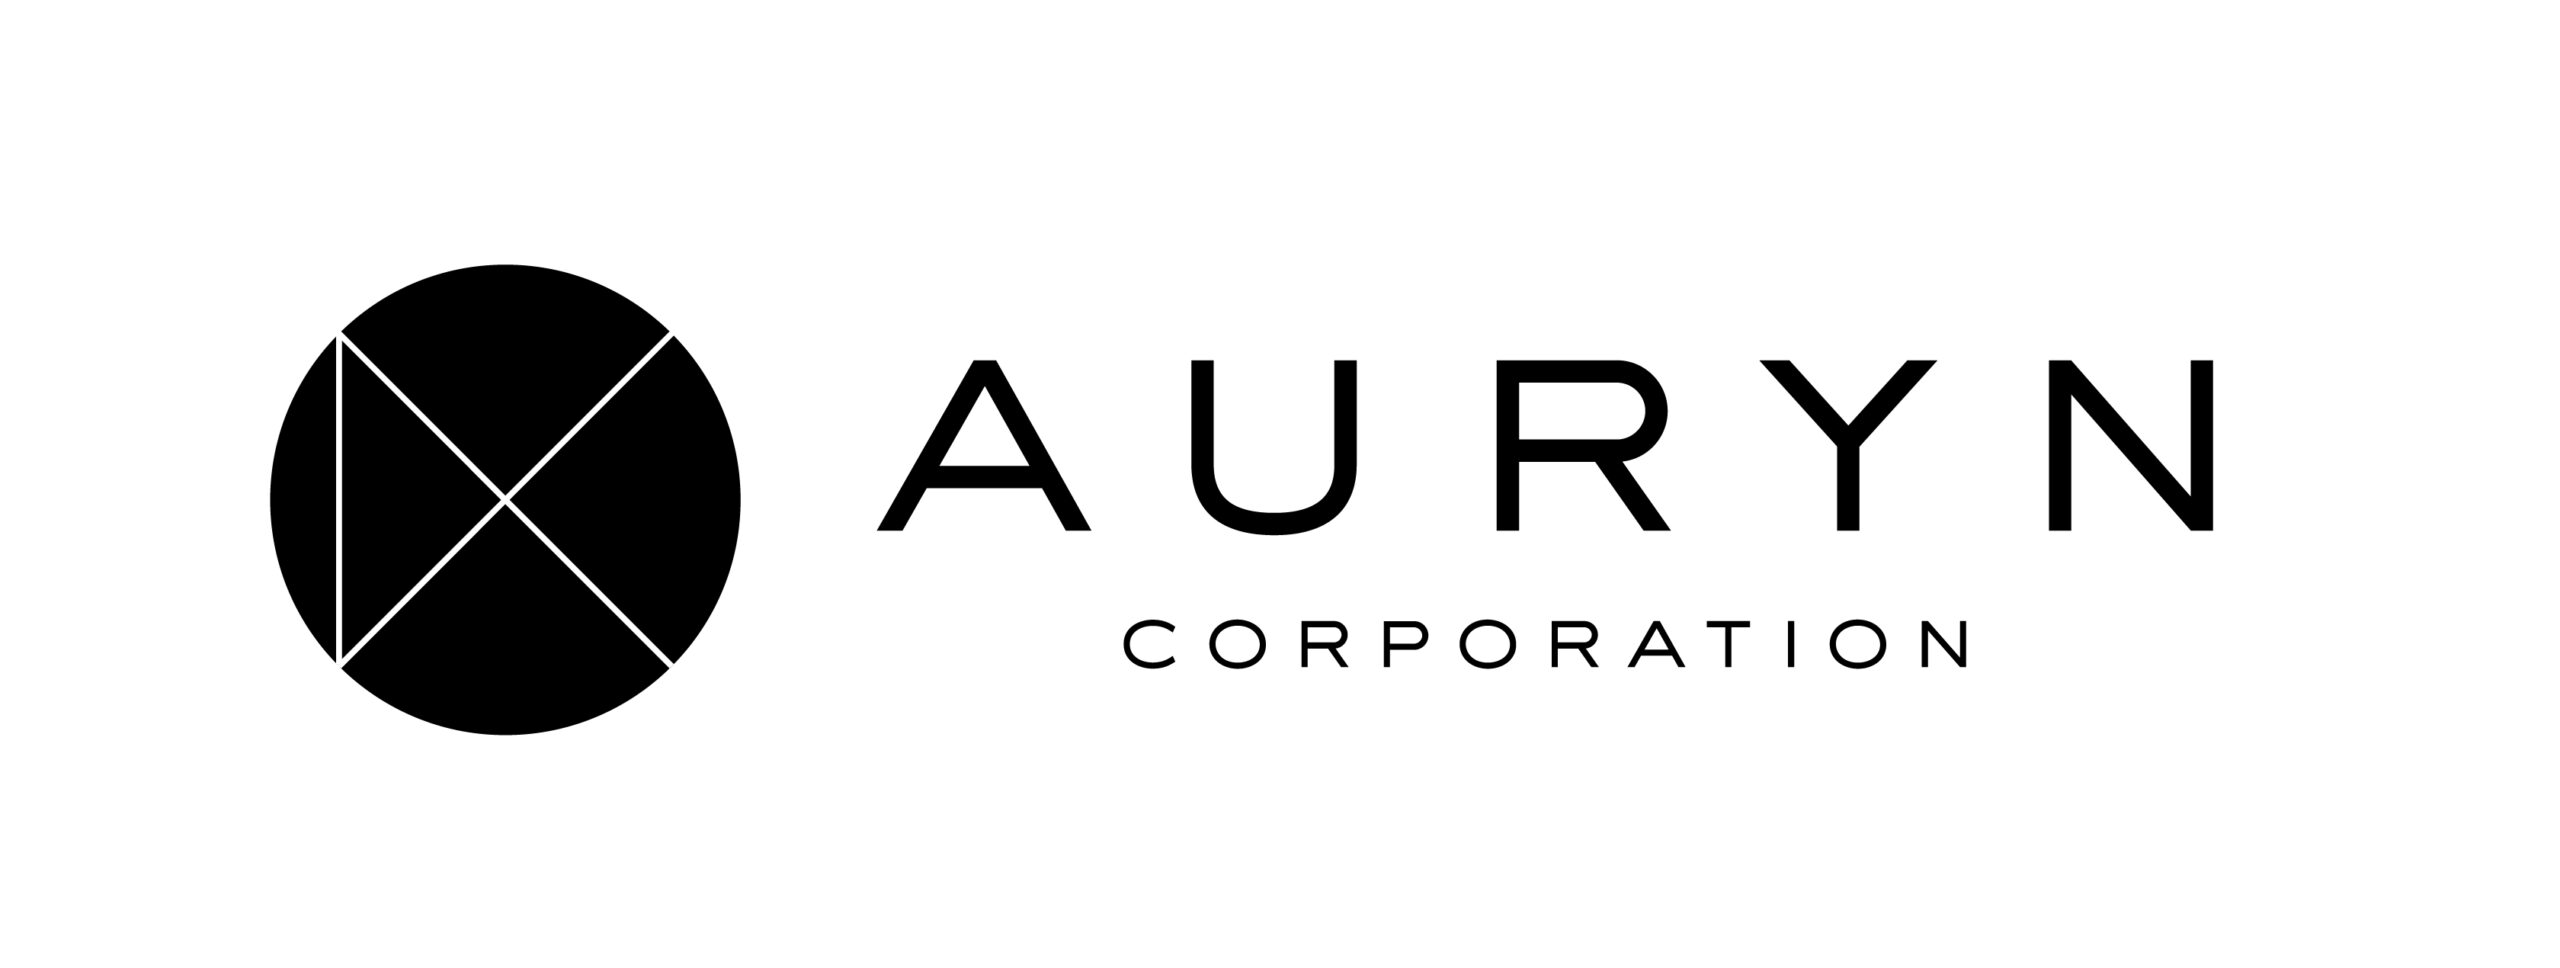 auryn corporation